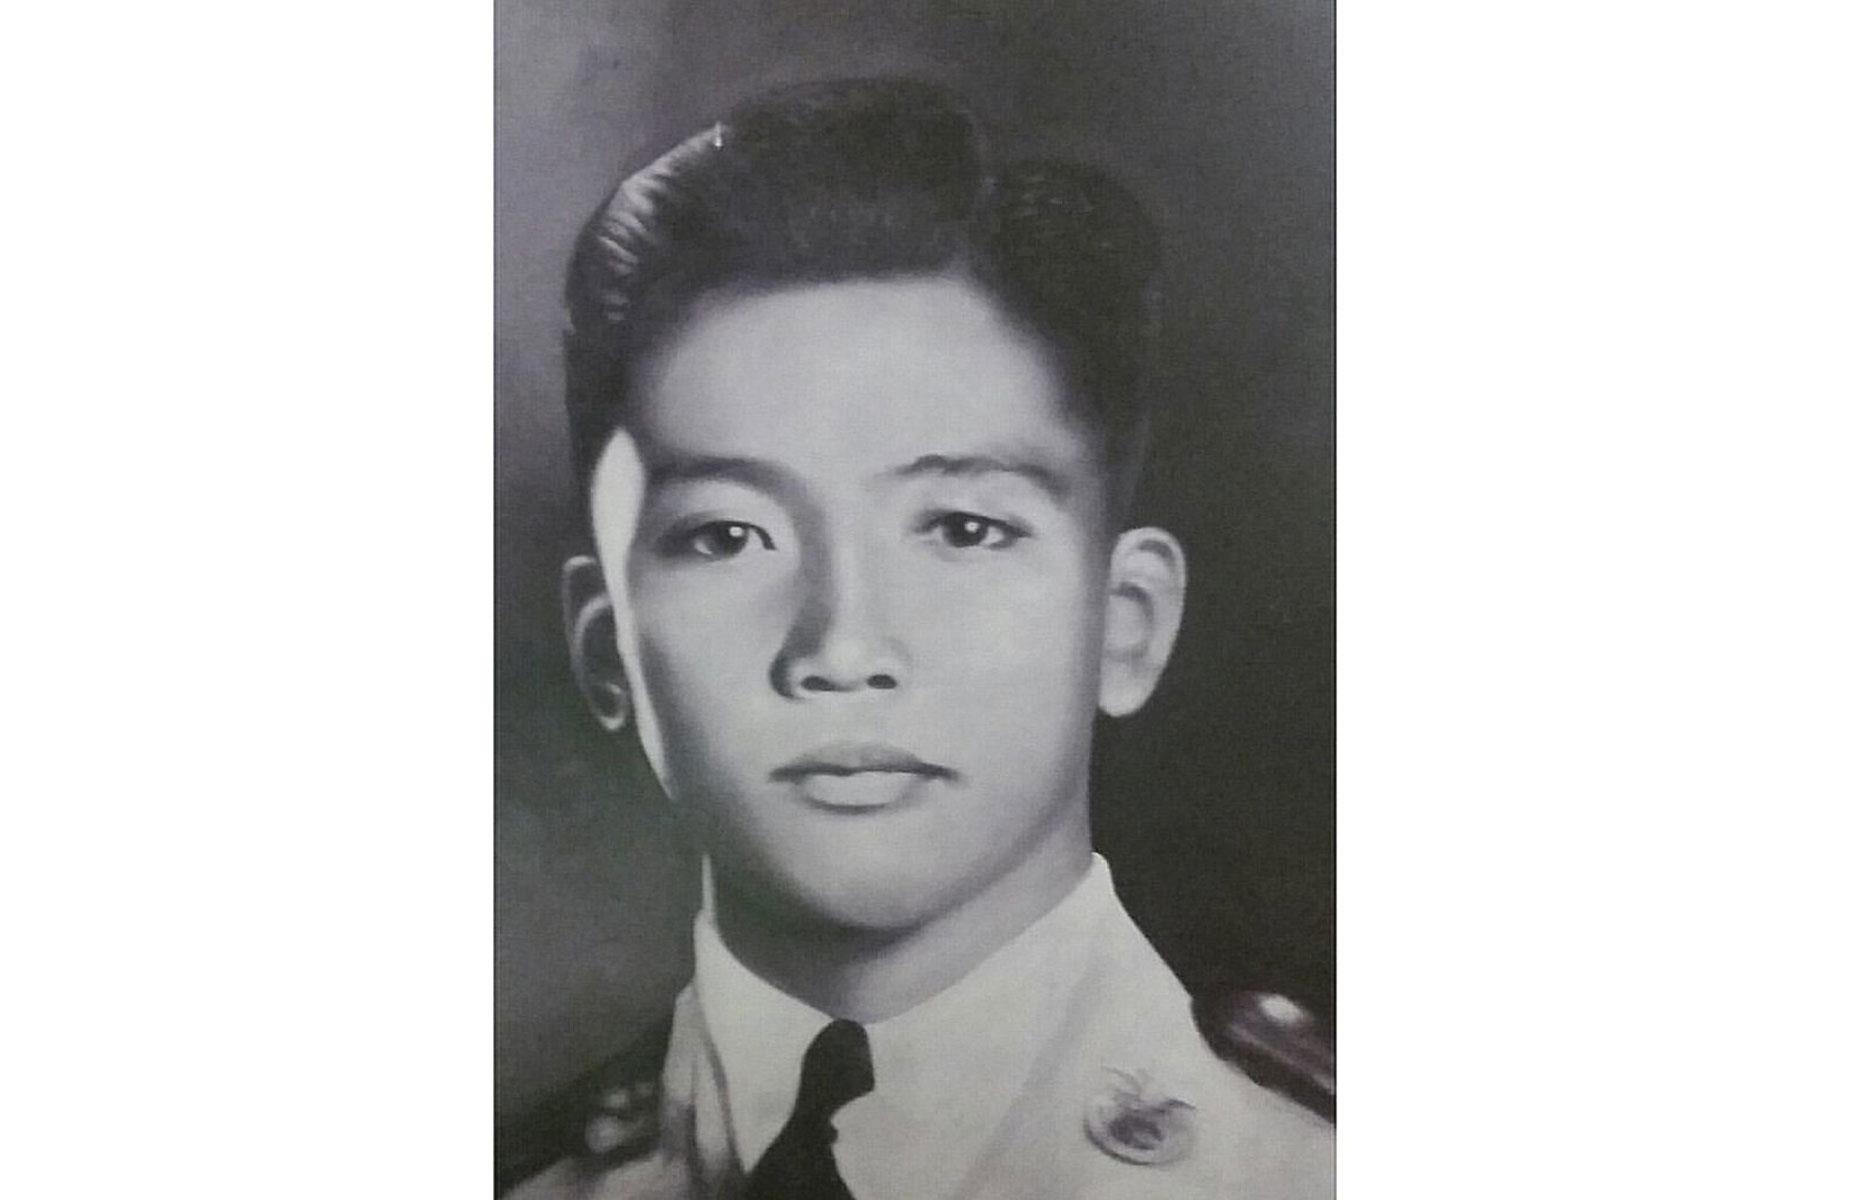 Prime suspect Ferdinand Marcos